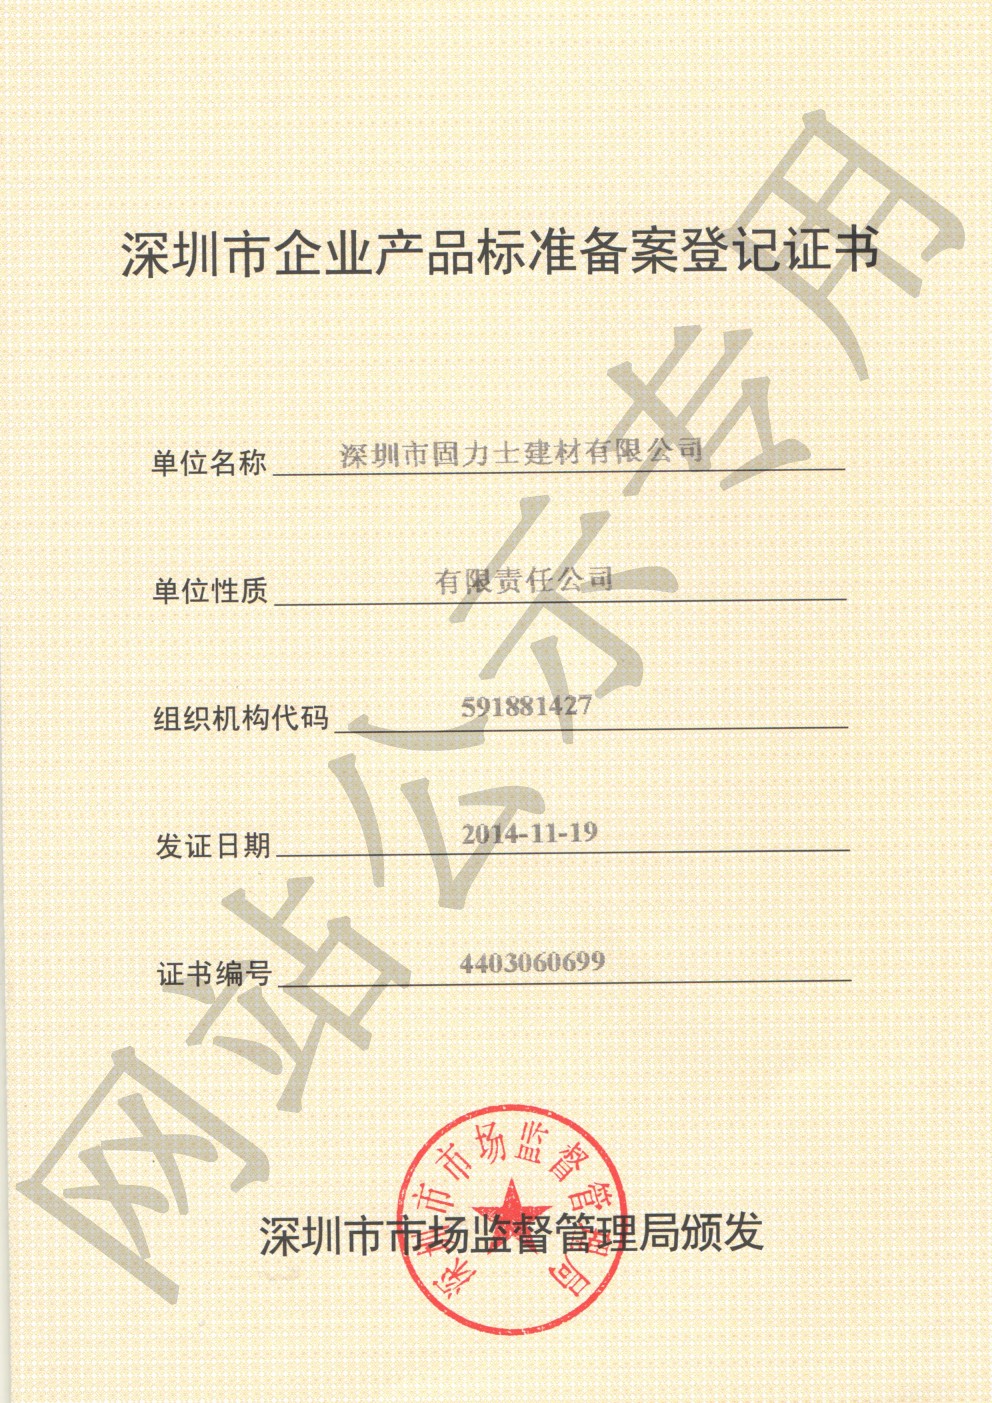 德江企业产品标准登记证书